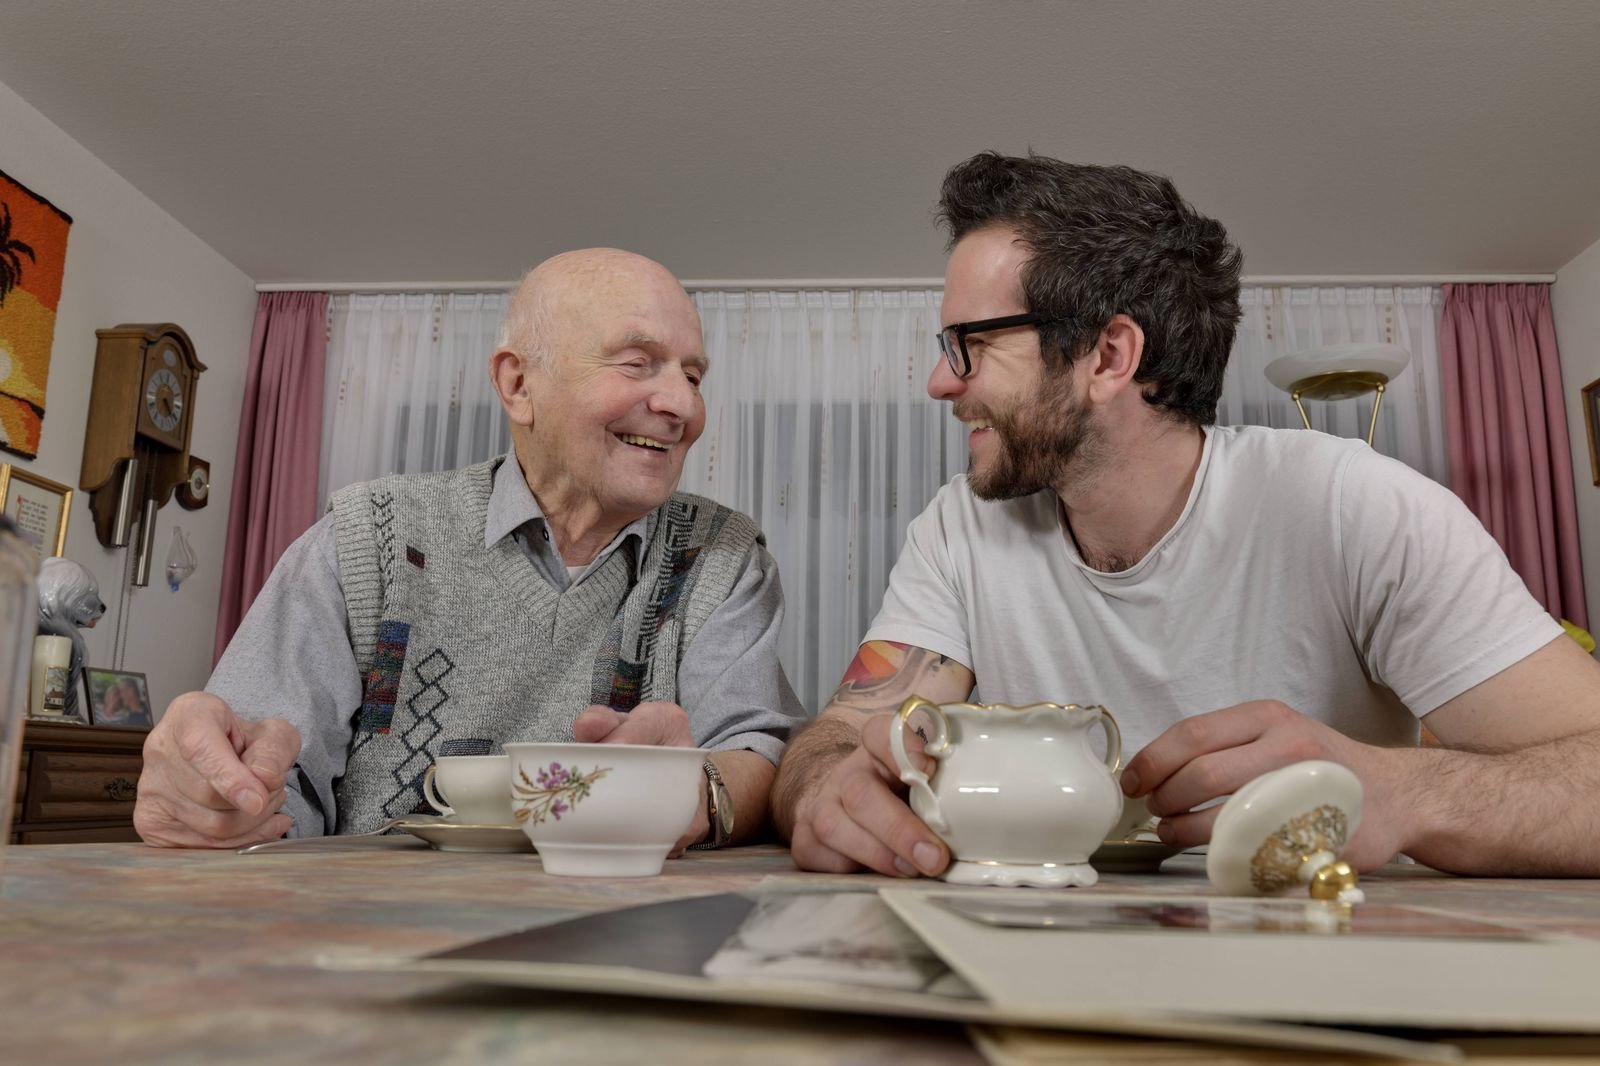  Älterer und junger Mann trinken gemeinsam Tee und lachen miteinander als Symbol dafür, dass Modell wie "Wohnen für Hilfe" funktionieren können.